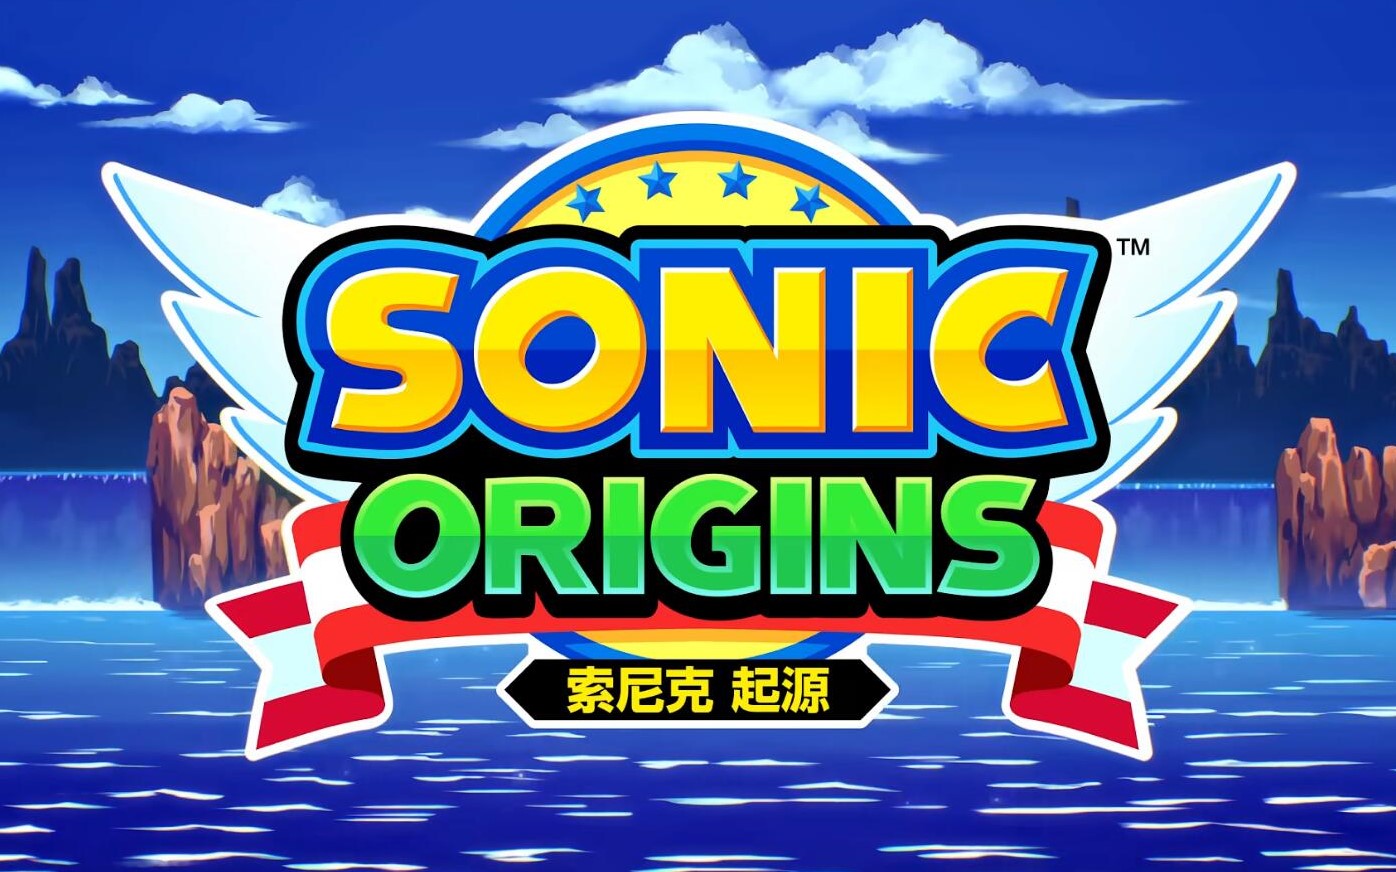 新一期Sonic Central將於6月8日凌晨舉辦